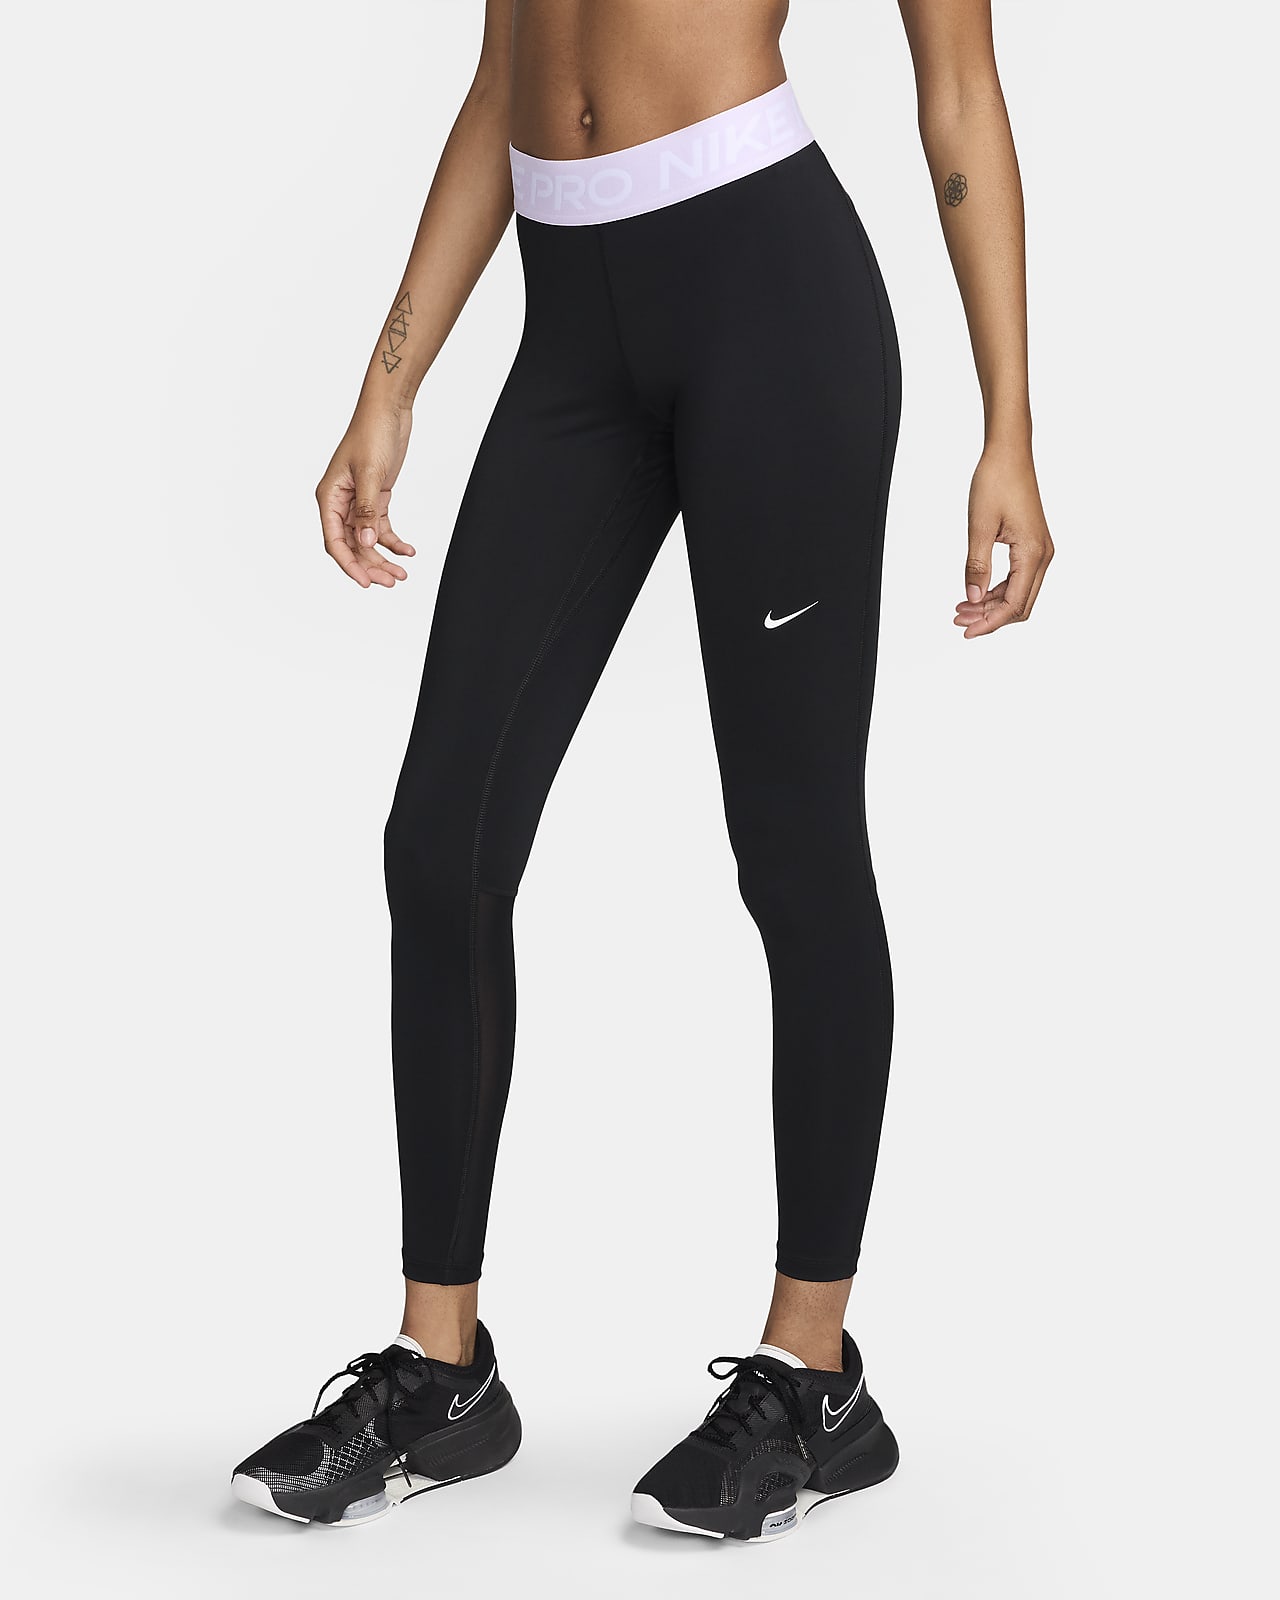 Γυναικείο κολάν μεσαίου ύψους με φάσες από διχτυωτό υλικό Nike Pro